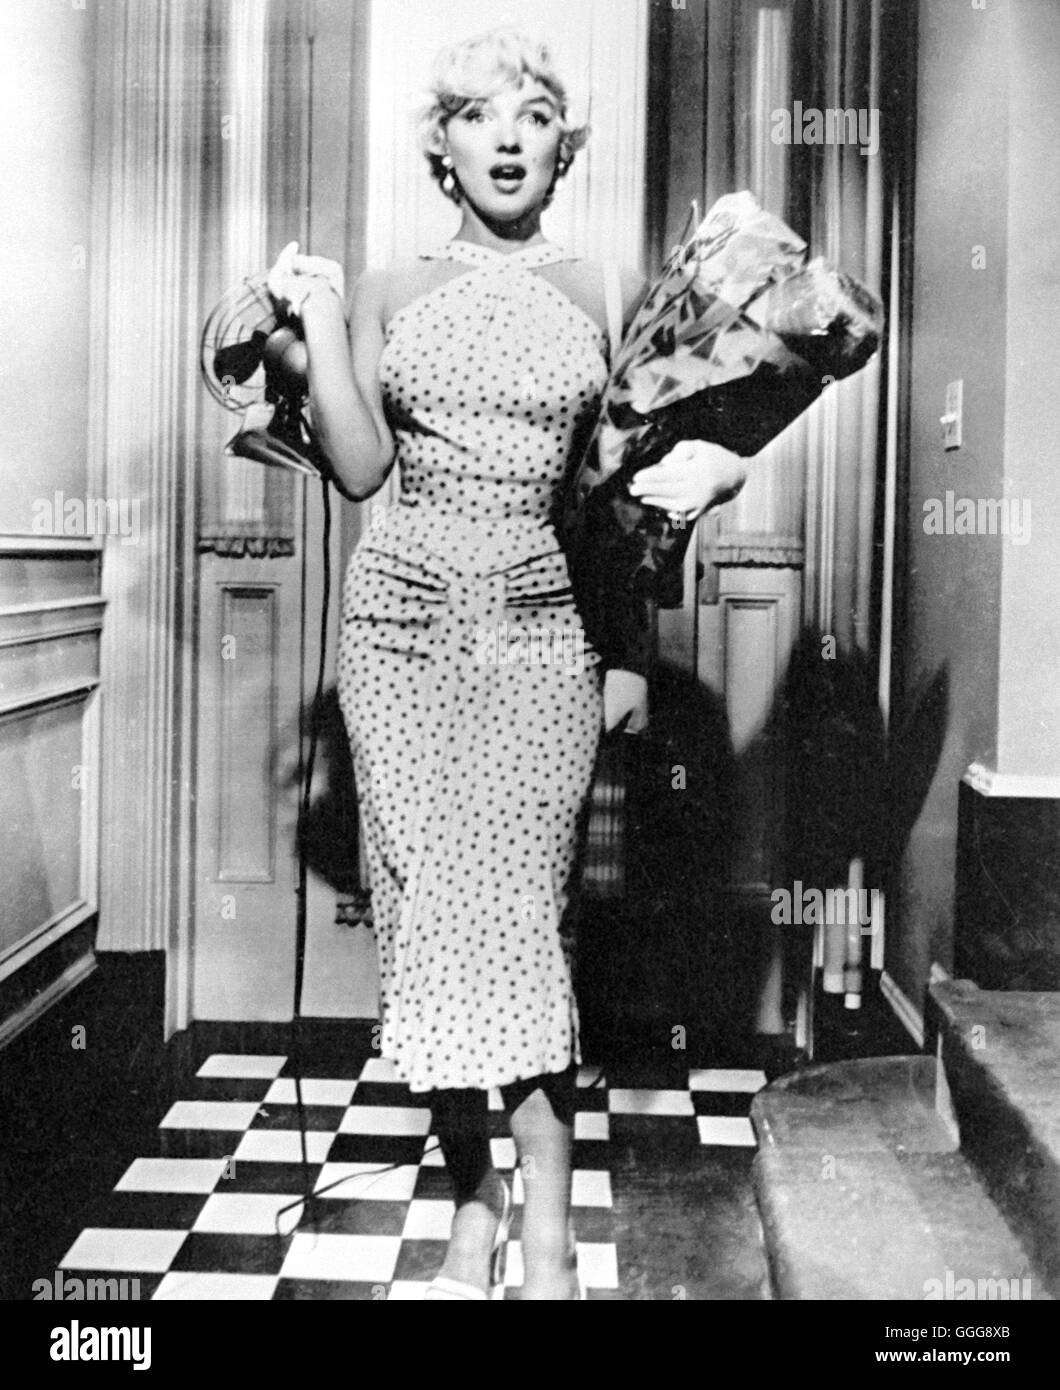 DAS VERFLIXTE 7. JAHR / la comezón siete años USA 1955 / Billy Wilder Marilyn Monroe, "El prurito de siete años", de 1955. Regie: Billy Wilder aka. El prurito de siete años Foto de stock